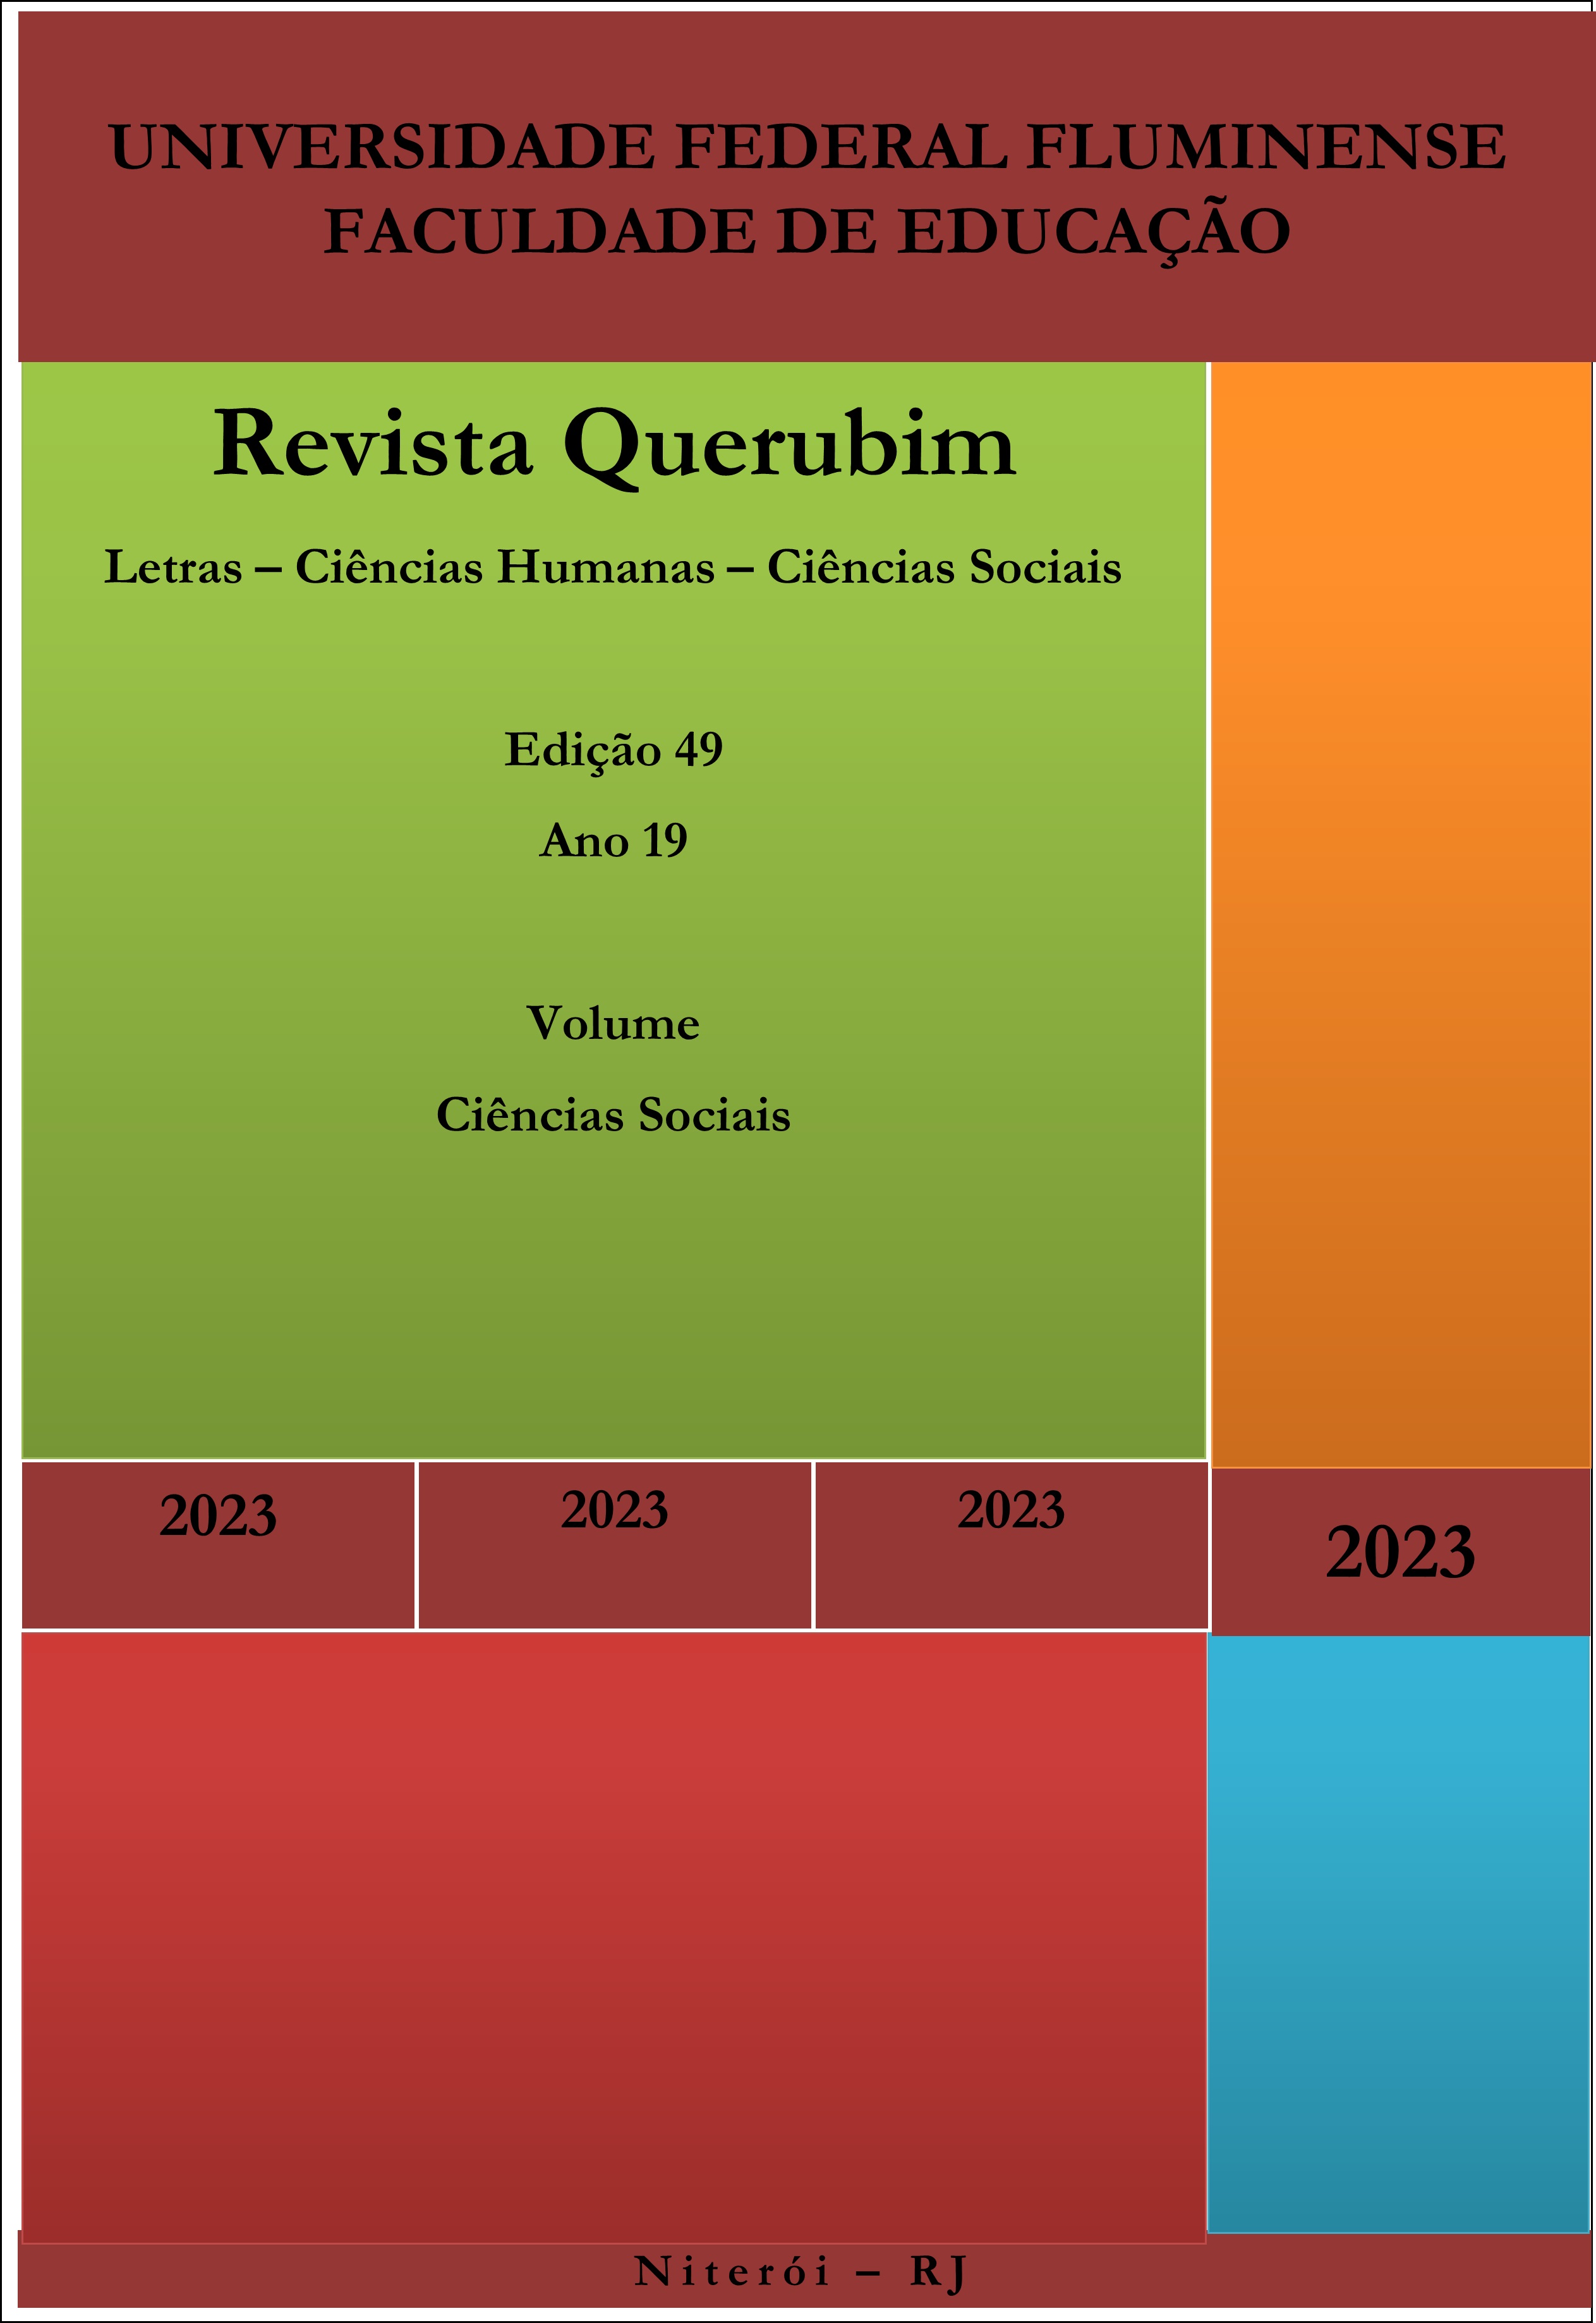 					Ver Vol. 3 N.º 49 (2023): Revista Querubim 49 v 3 C. Sociais
				